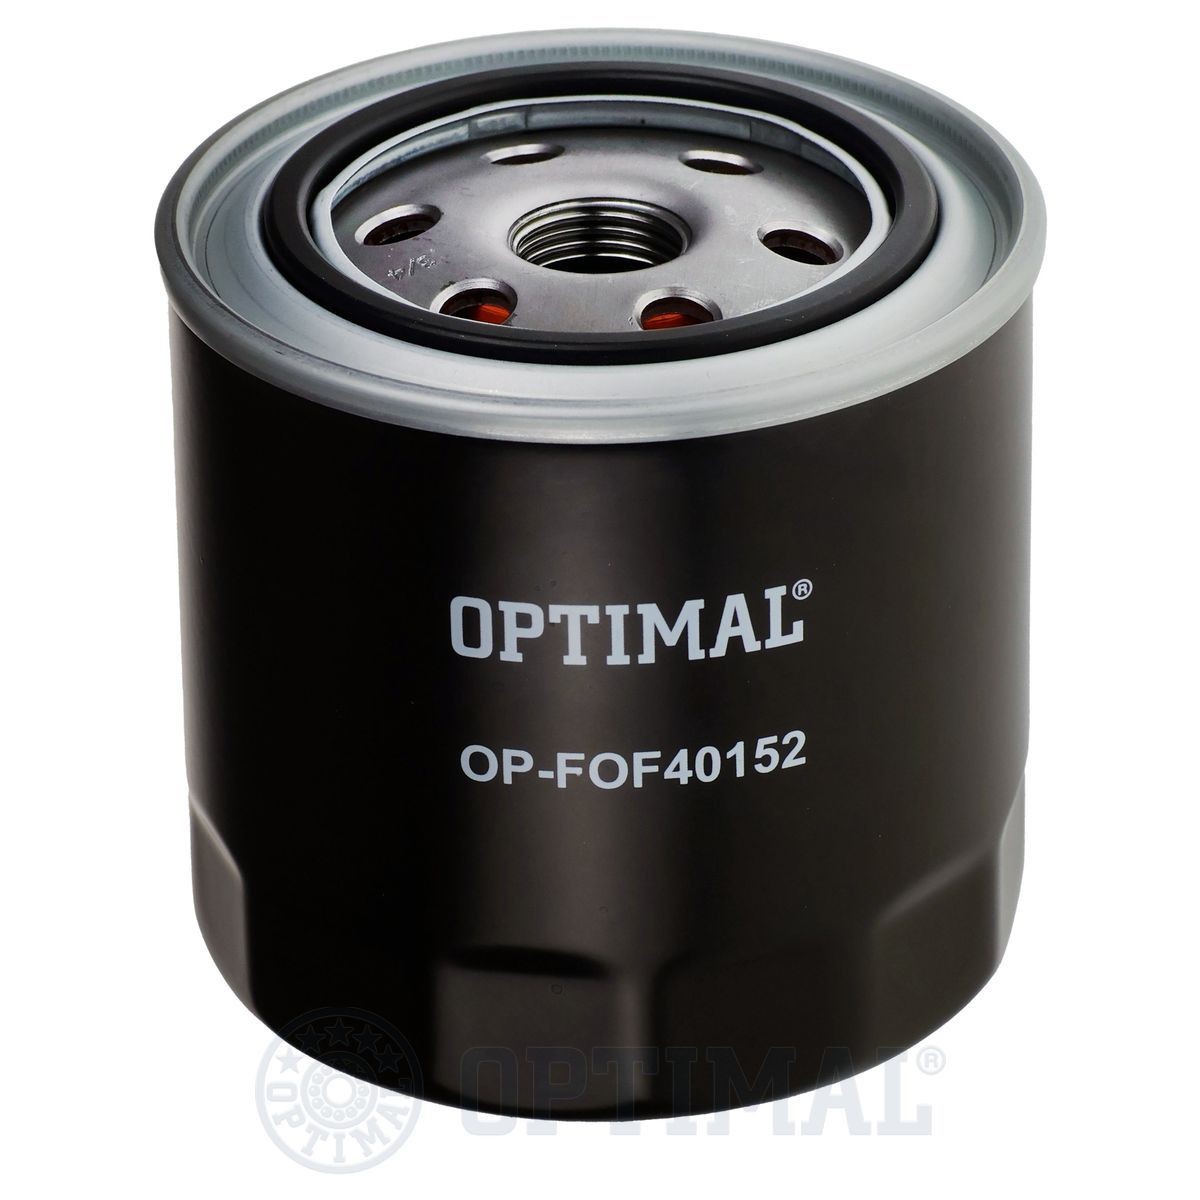 OPTIMAL OP-FOF40152 Oil filter 05037 836AA